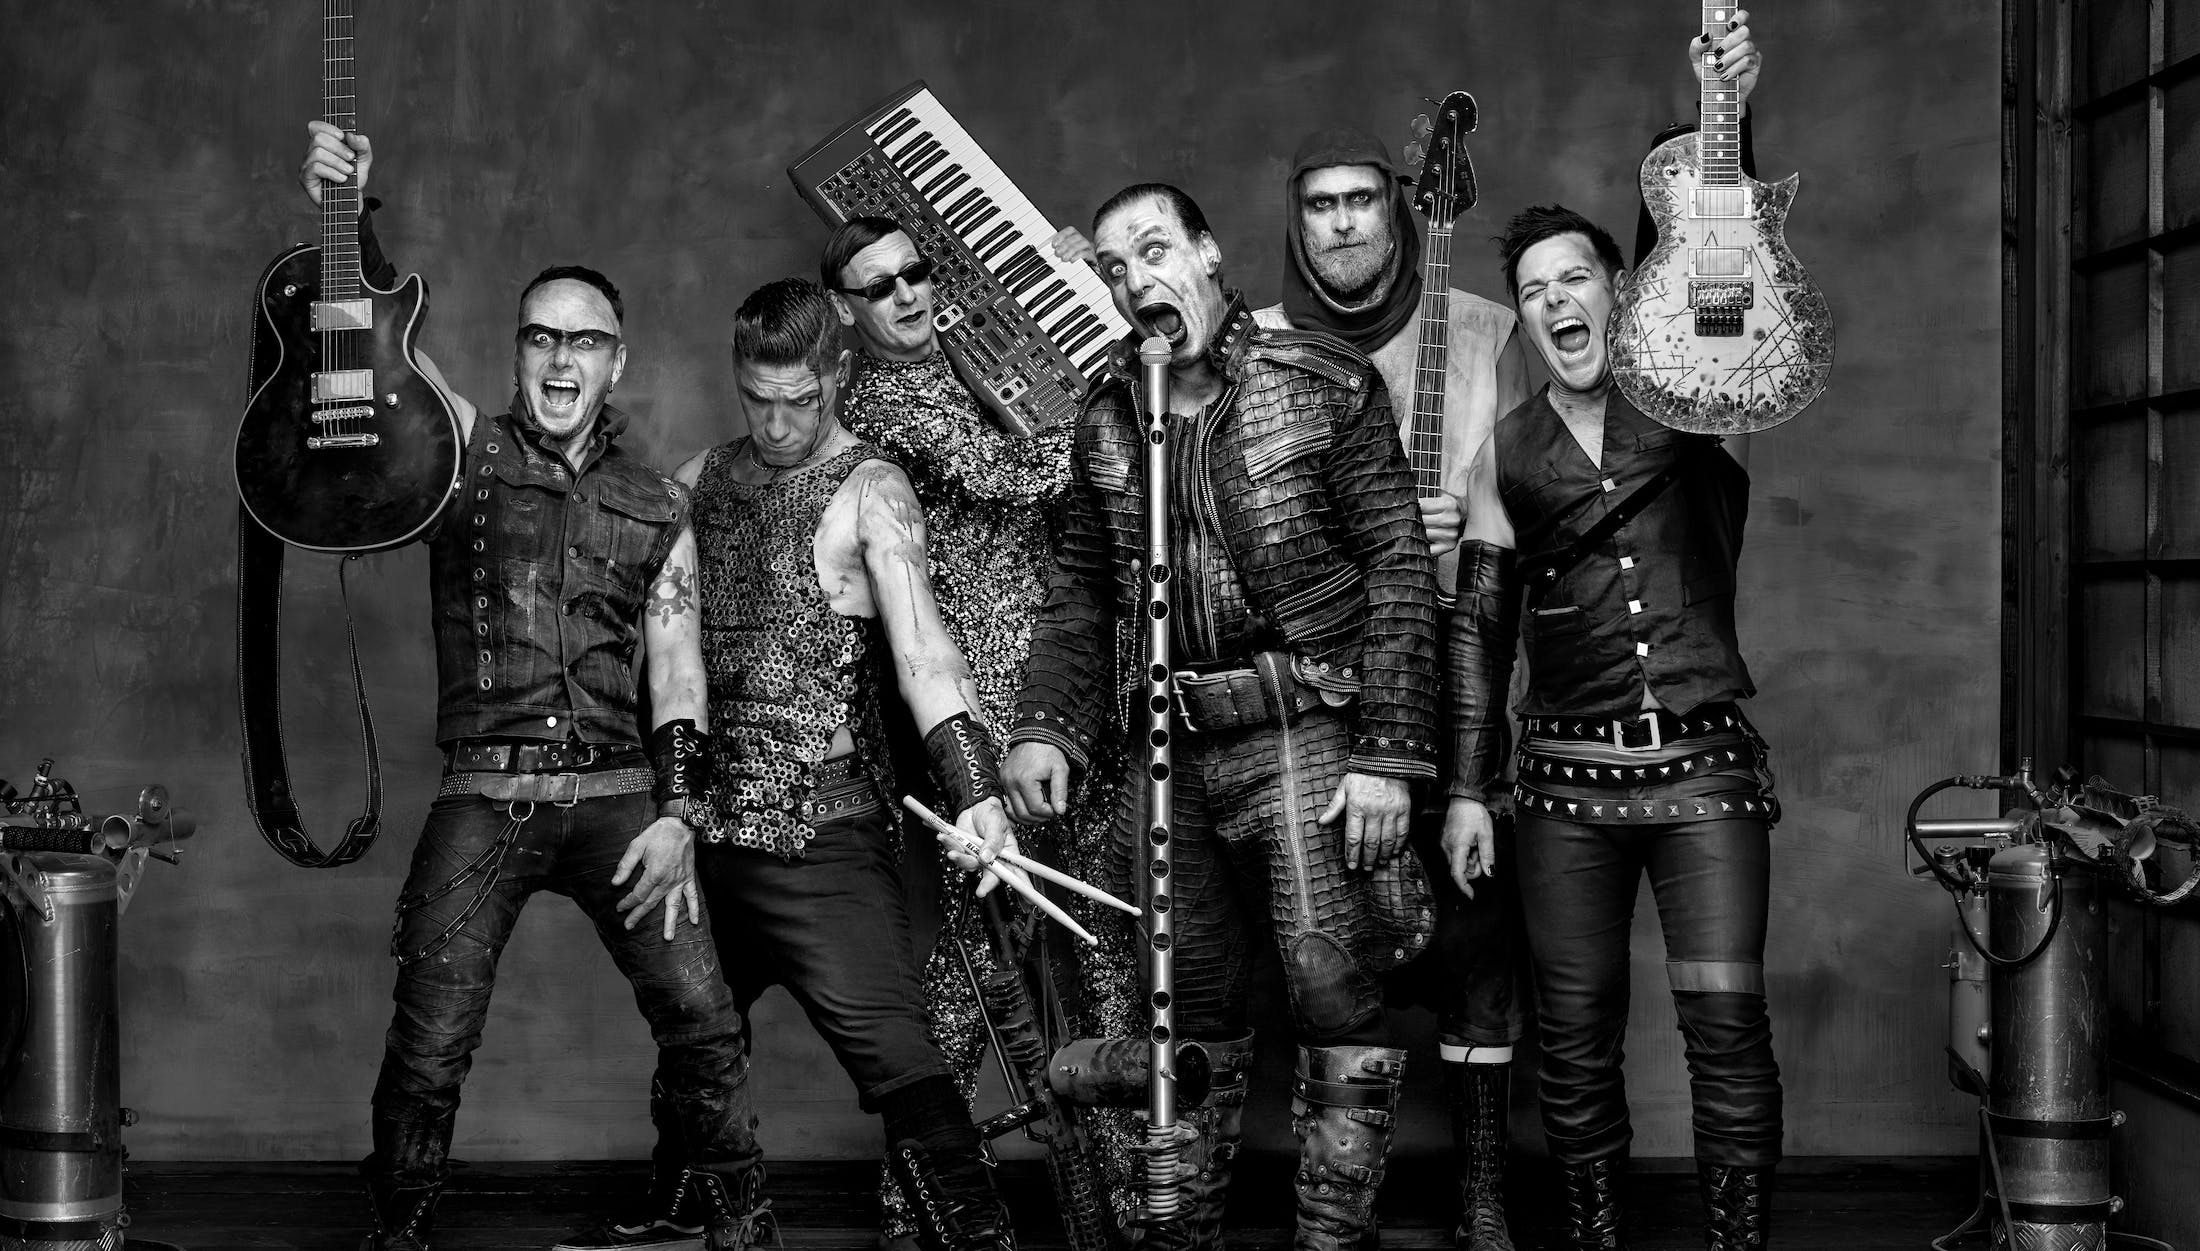 Rammstein : histoire d’un groupe de metal obscène et controversé